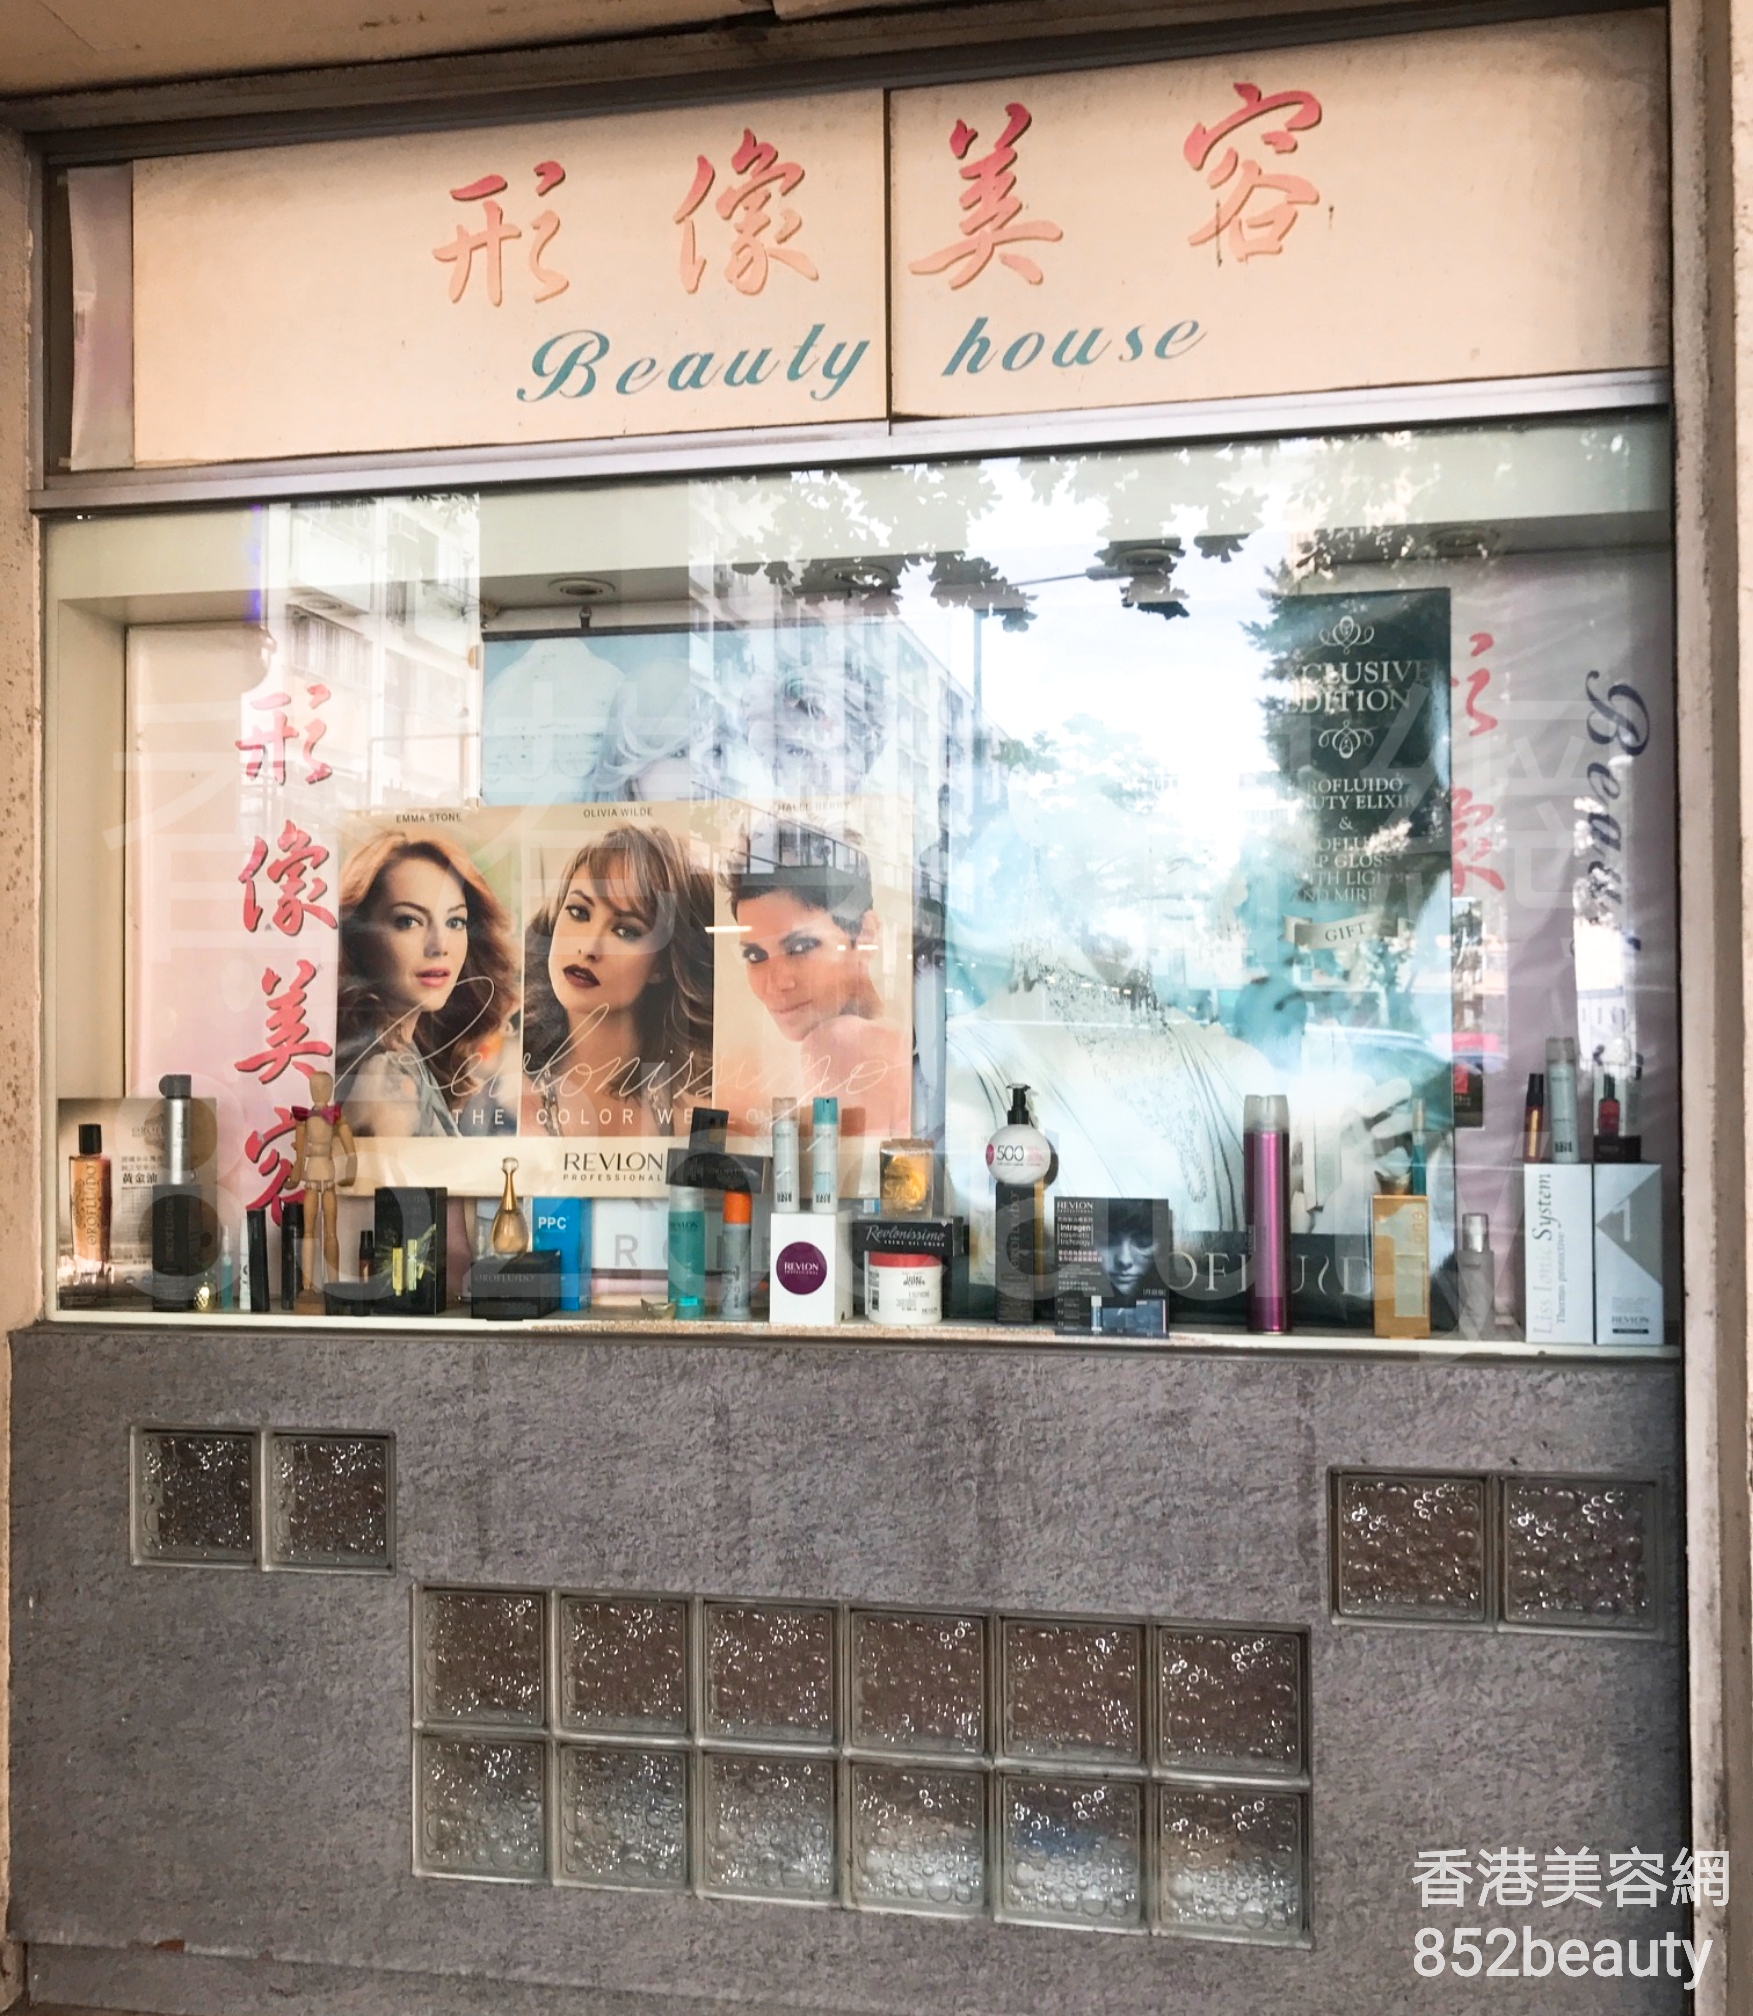 香港美容網 Hong Kong Beauty Salon 美容院 / 美容師: 形像美容 Beauty House